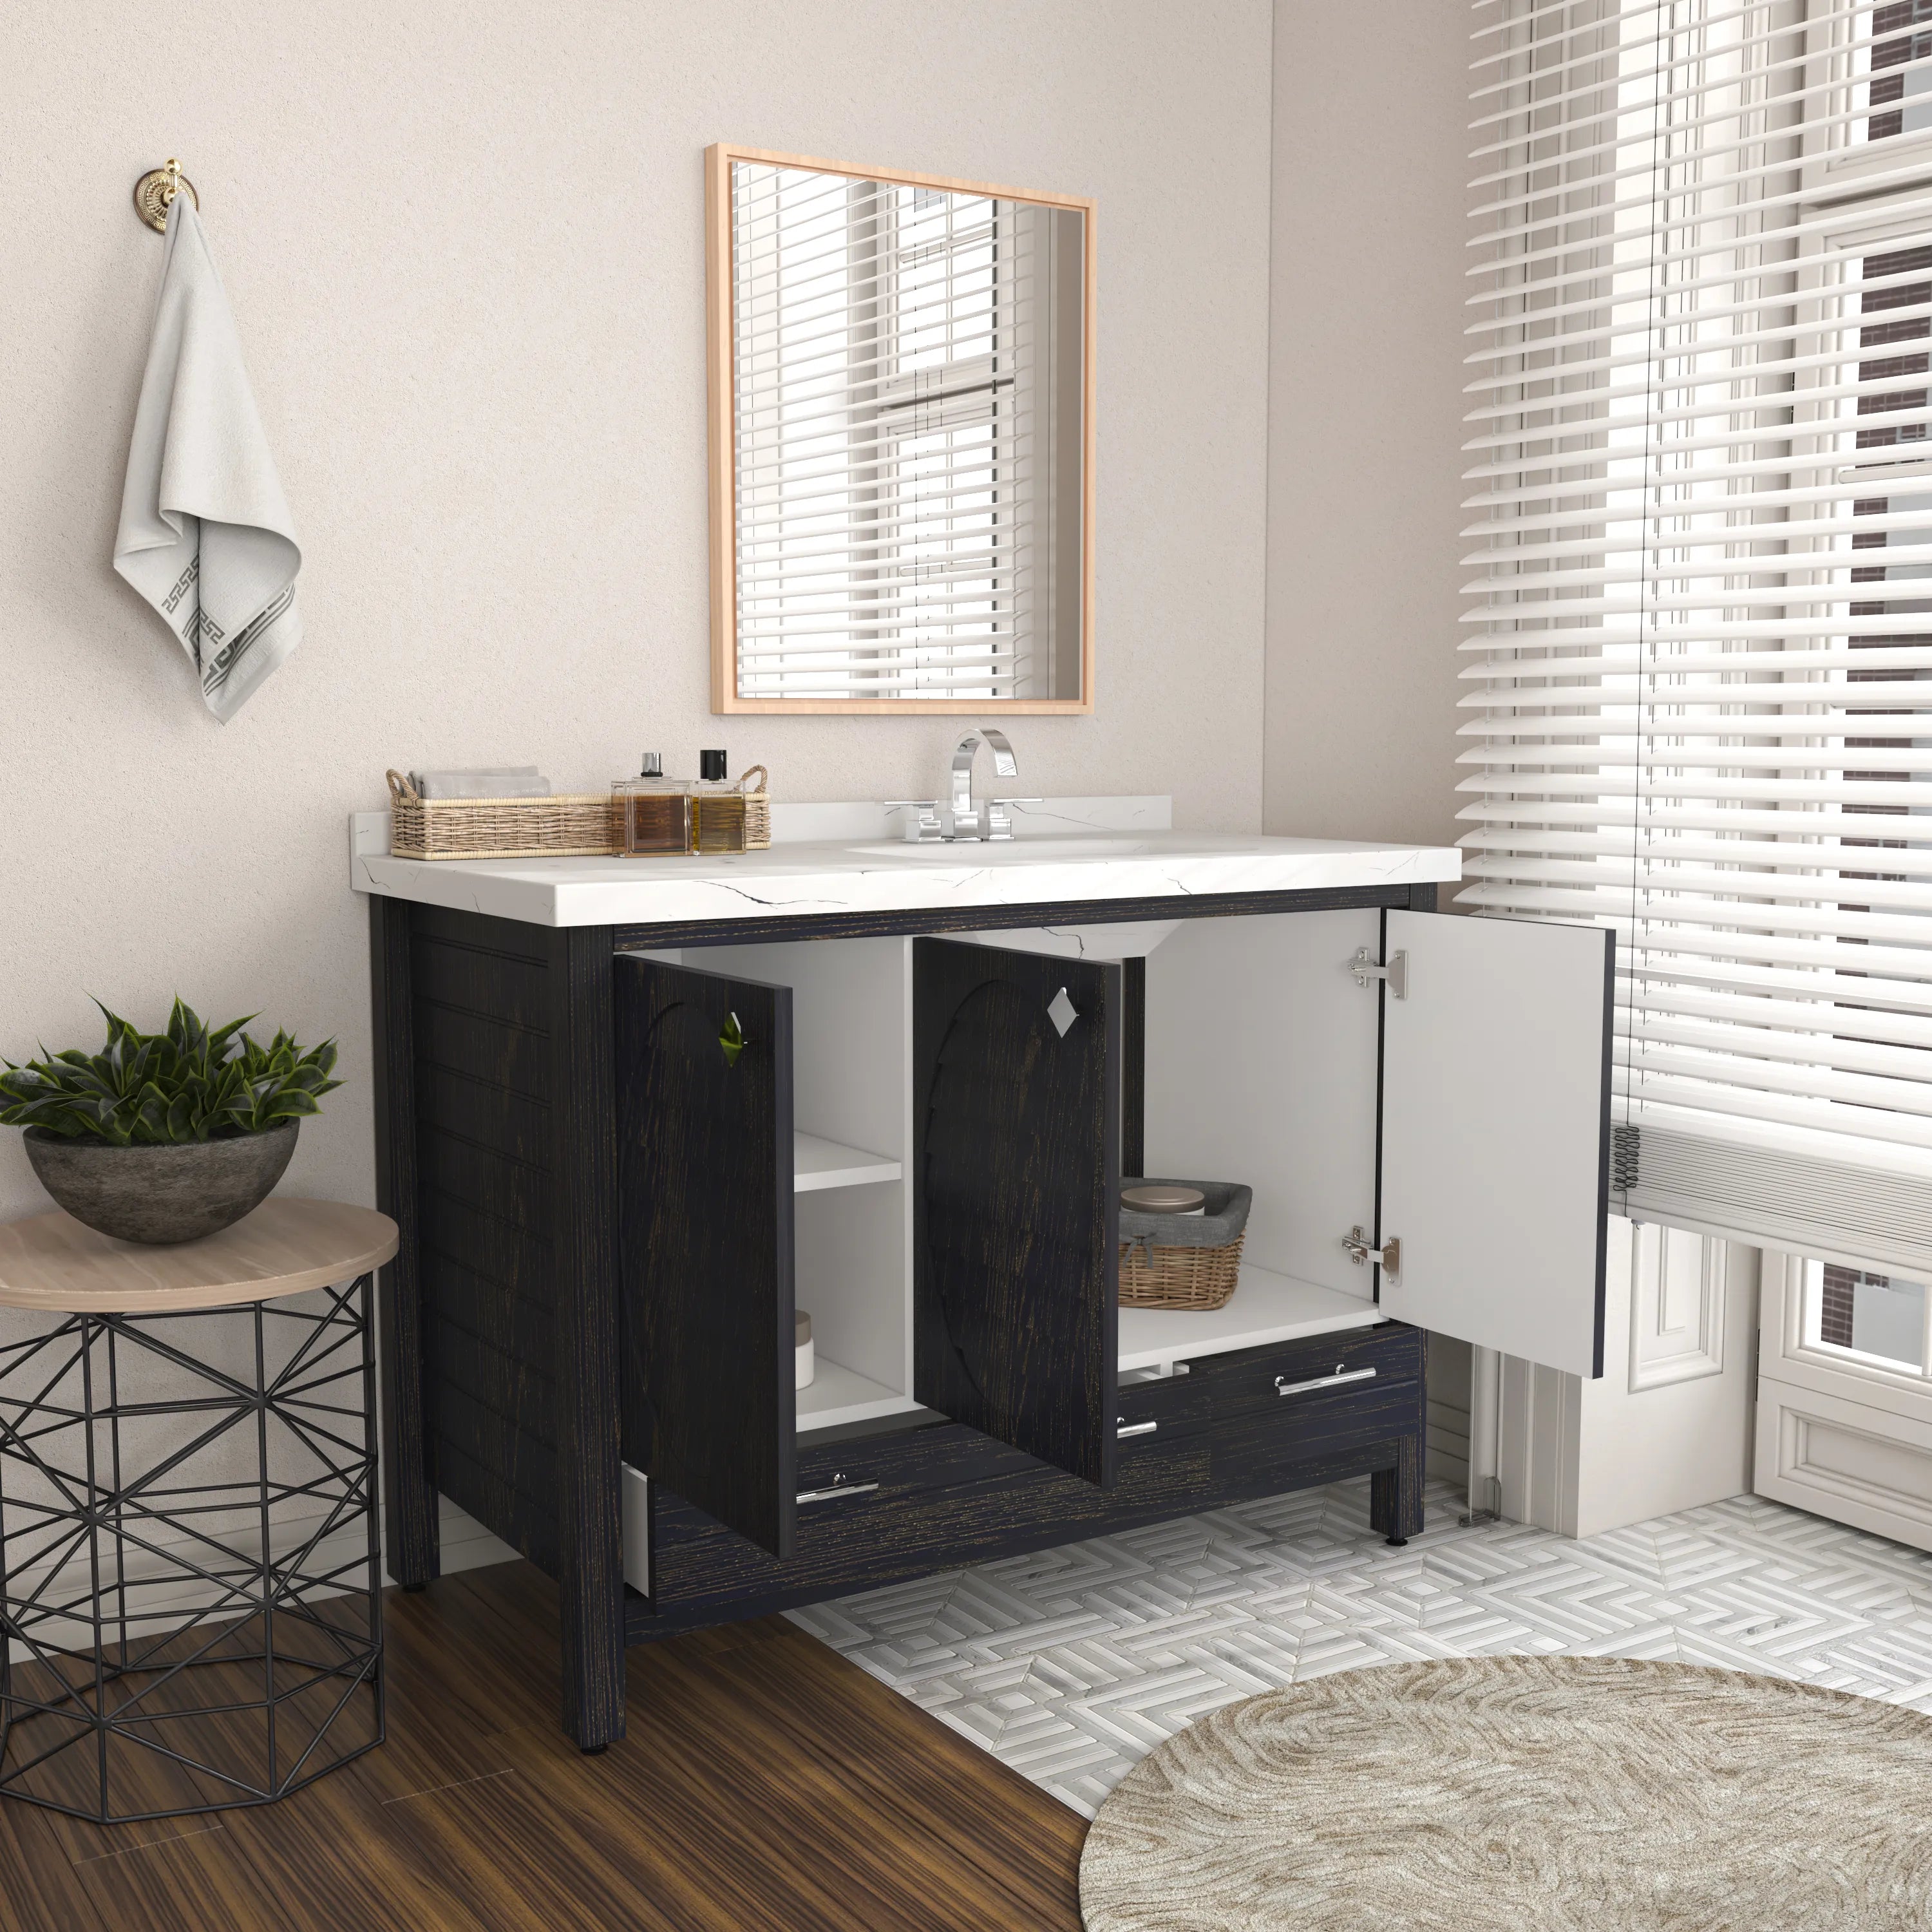 Kardelen 71'' Wide Free-standing Double Bathroom Vanity with Engineere